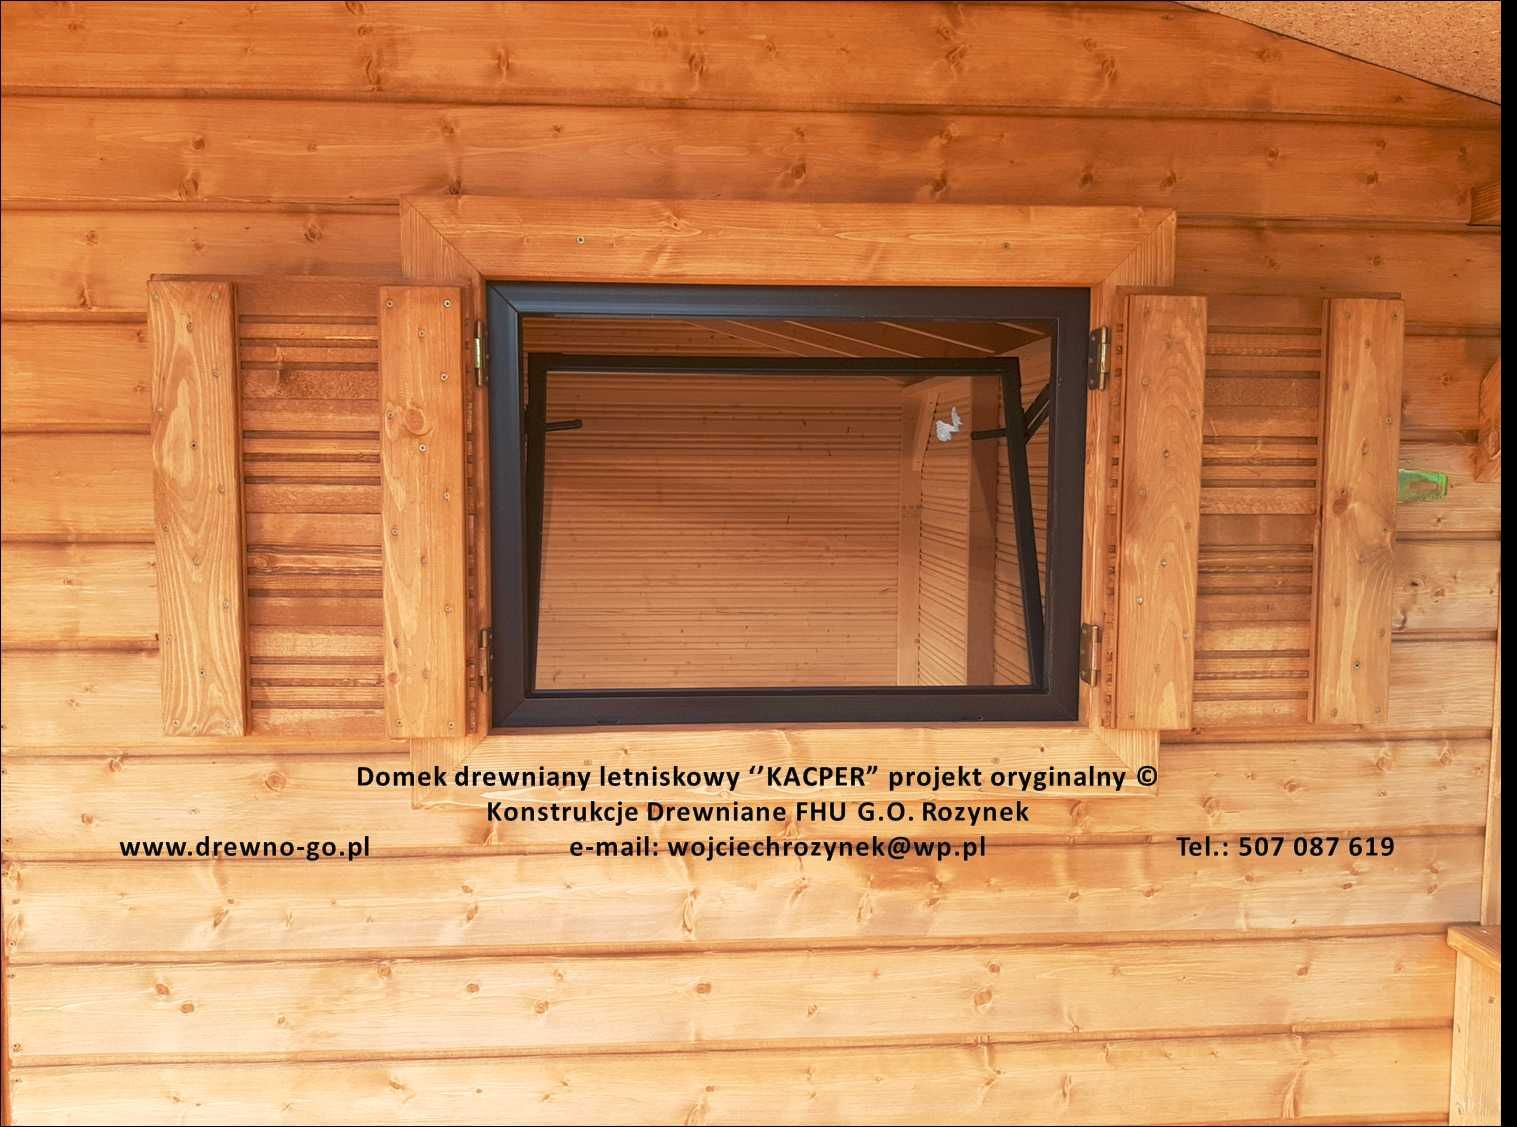 domek drewniany Toruńczyk 24 m2 z montażem dojazdem na wczoraj